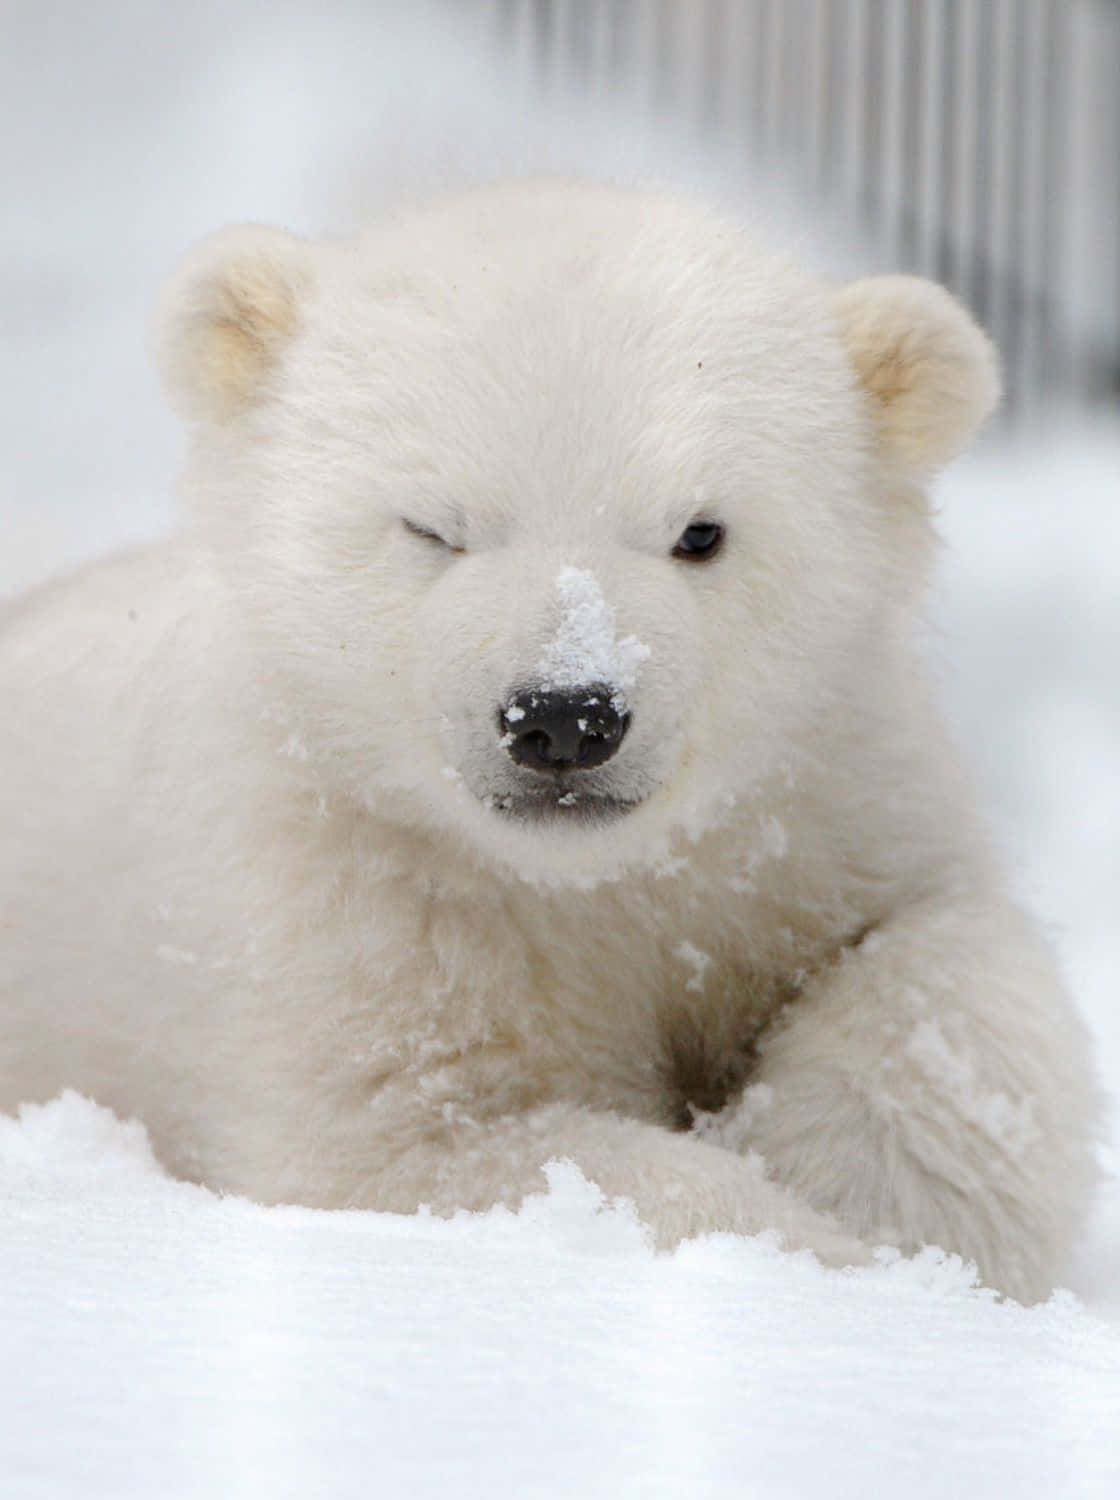 Einmajestätischer Eisbär In Seinem Natürlichen Lebensraum.